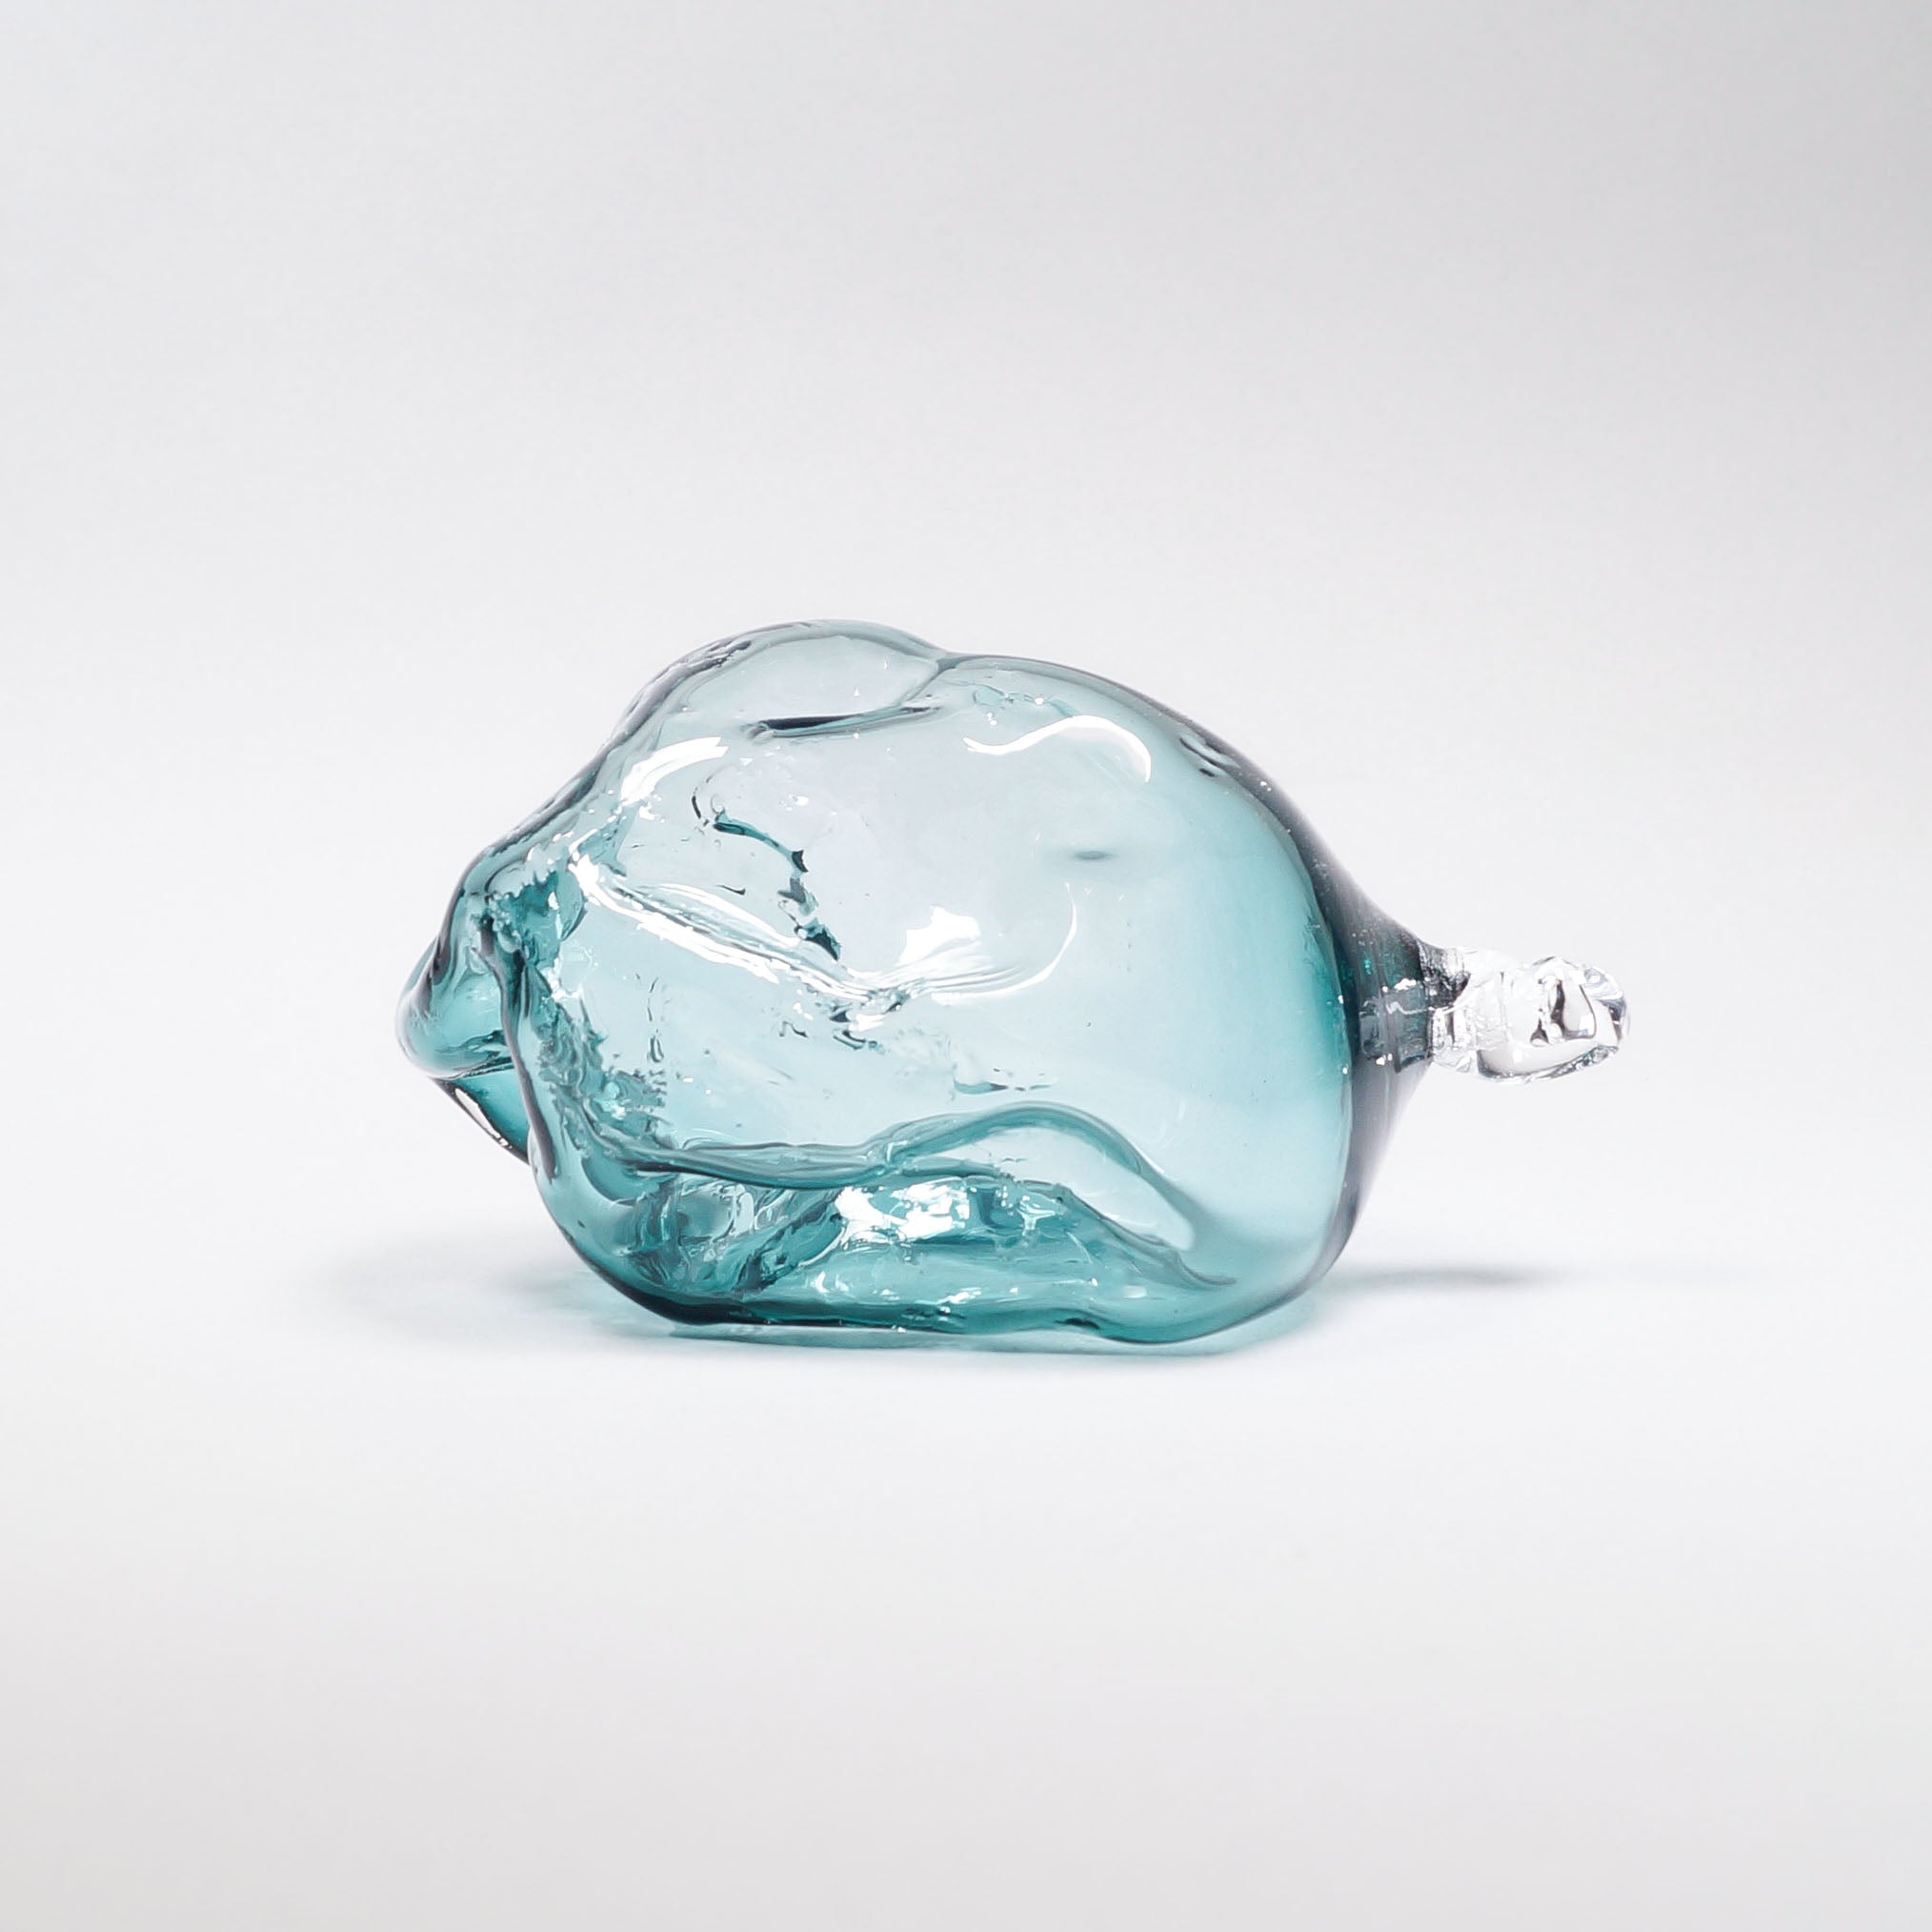 Glass Baubles // Stone BLÆS // Reffen Glass Studio